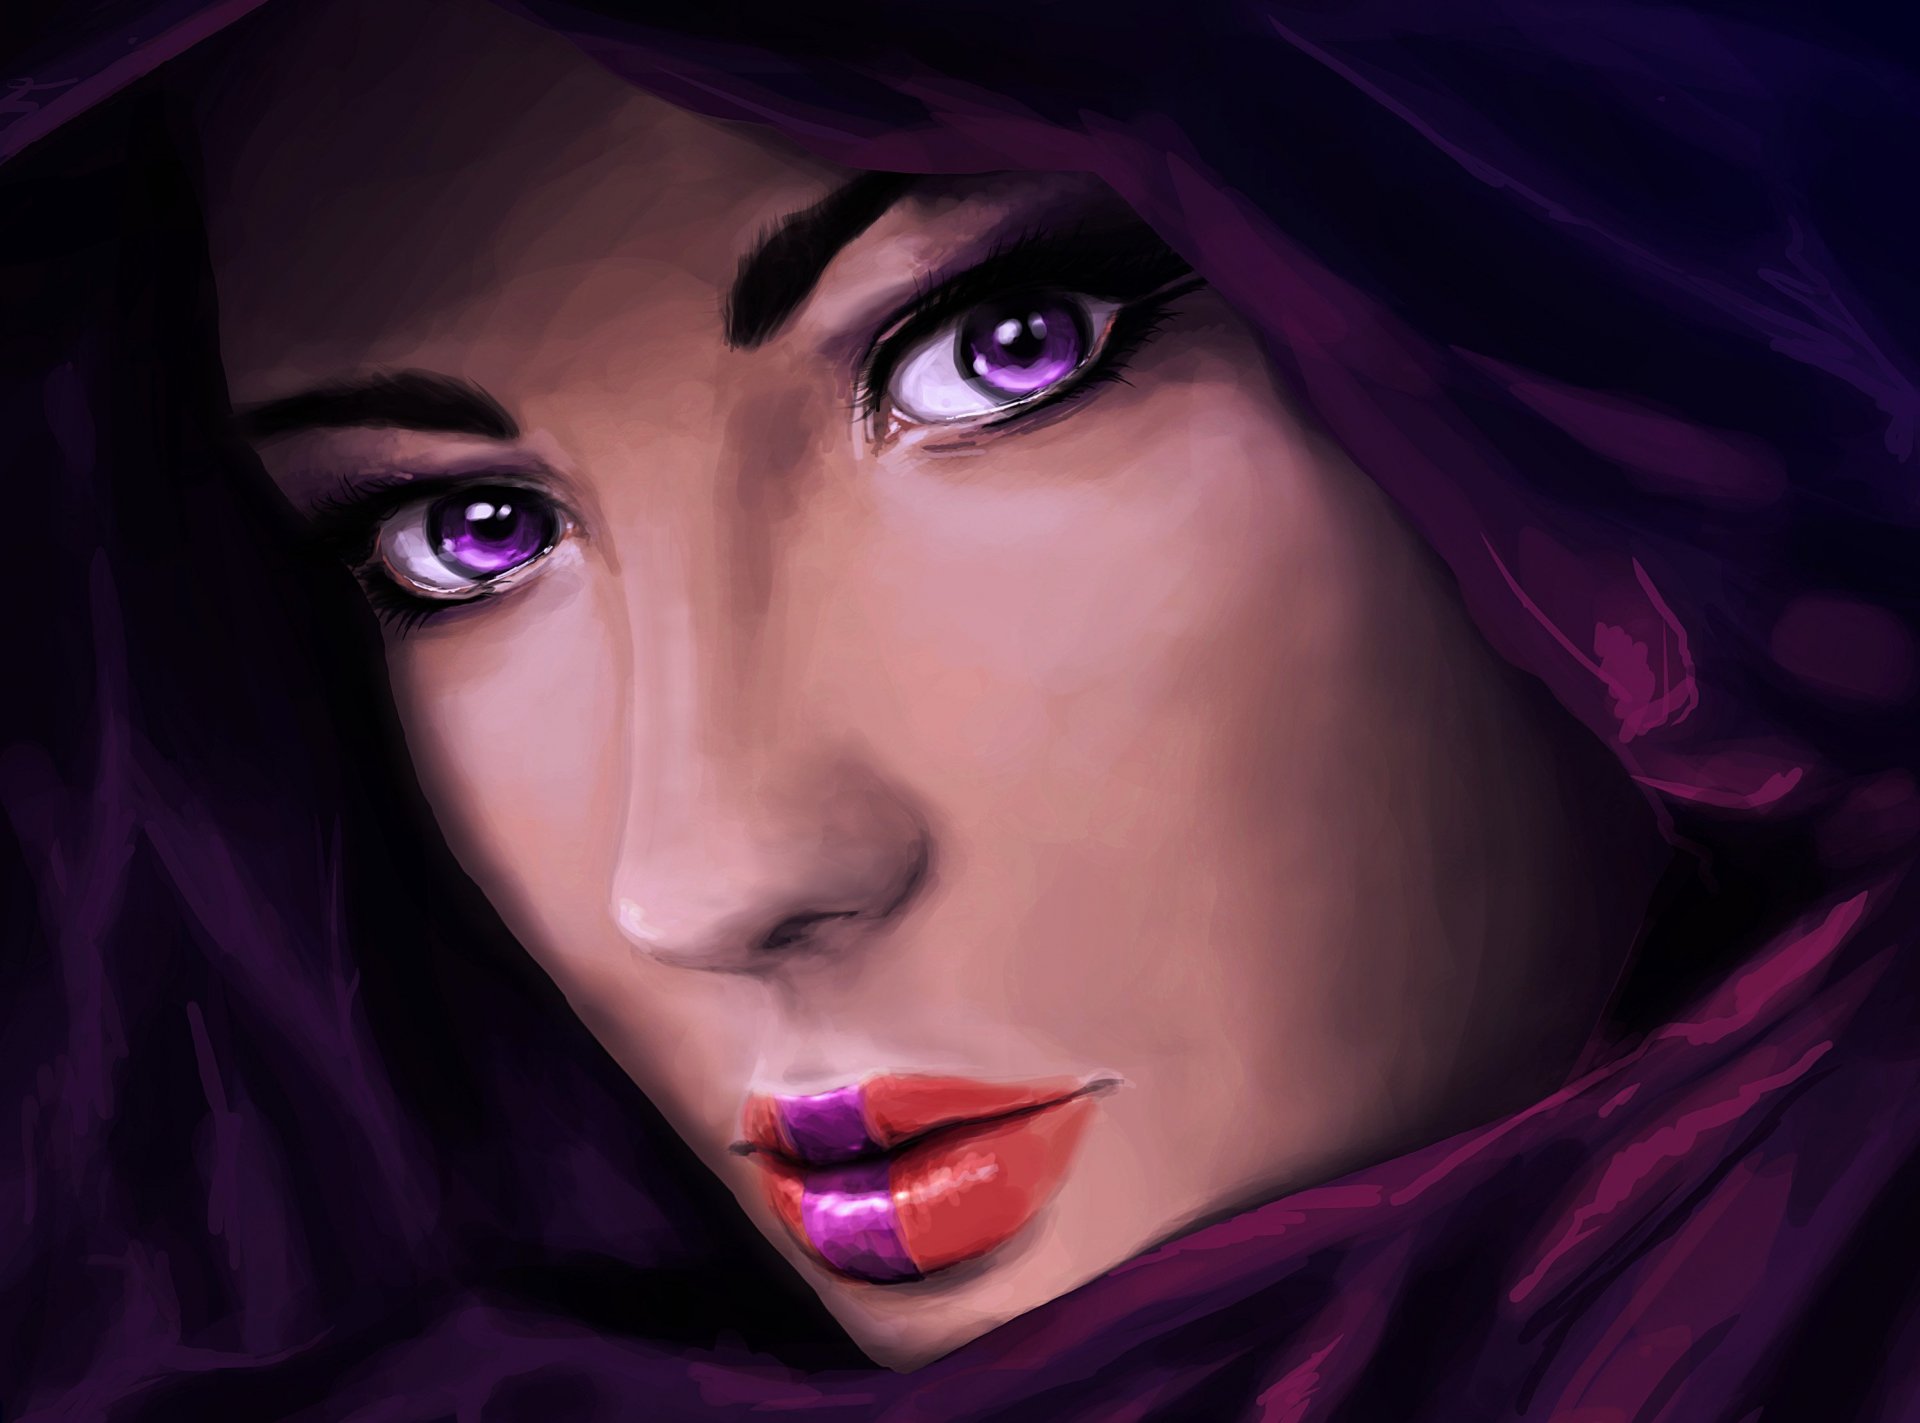 pintura arte chica mirada ojos cara primer plano labios capucha